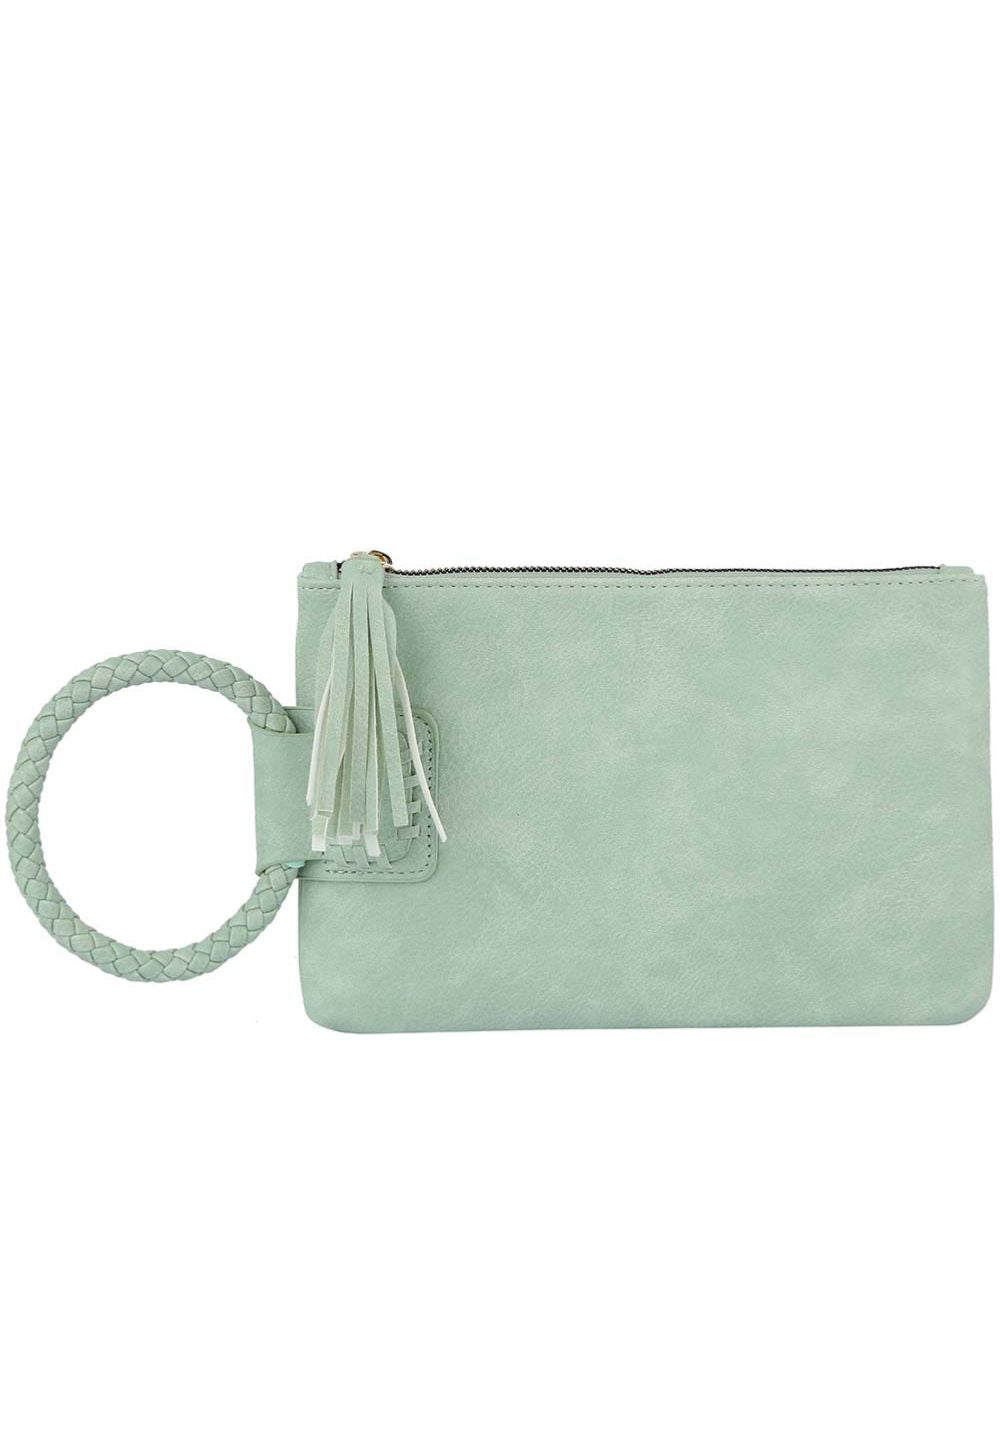 Mint Fashion Tassel Cuff Handle Clutch Handbag